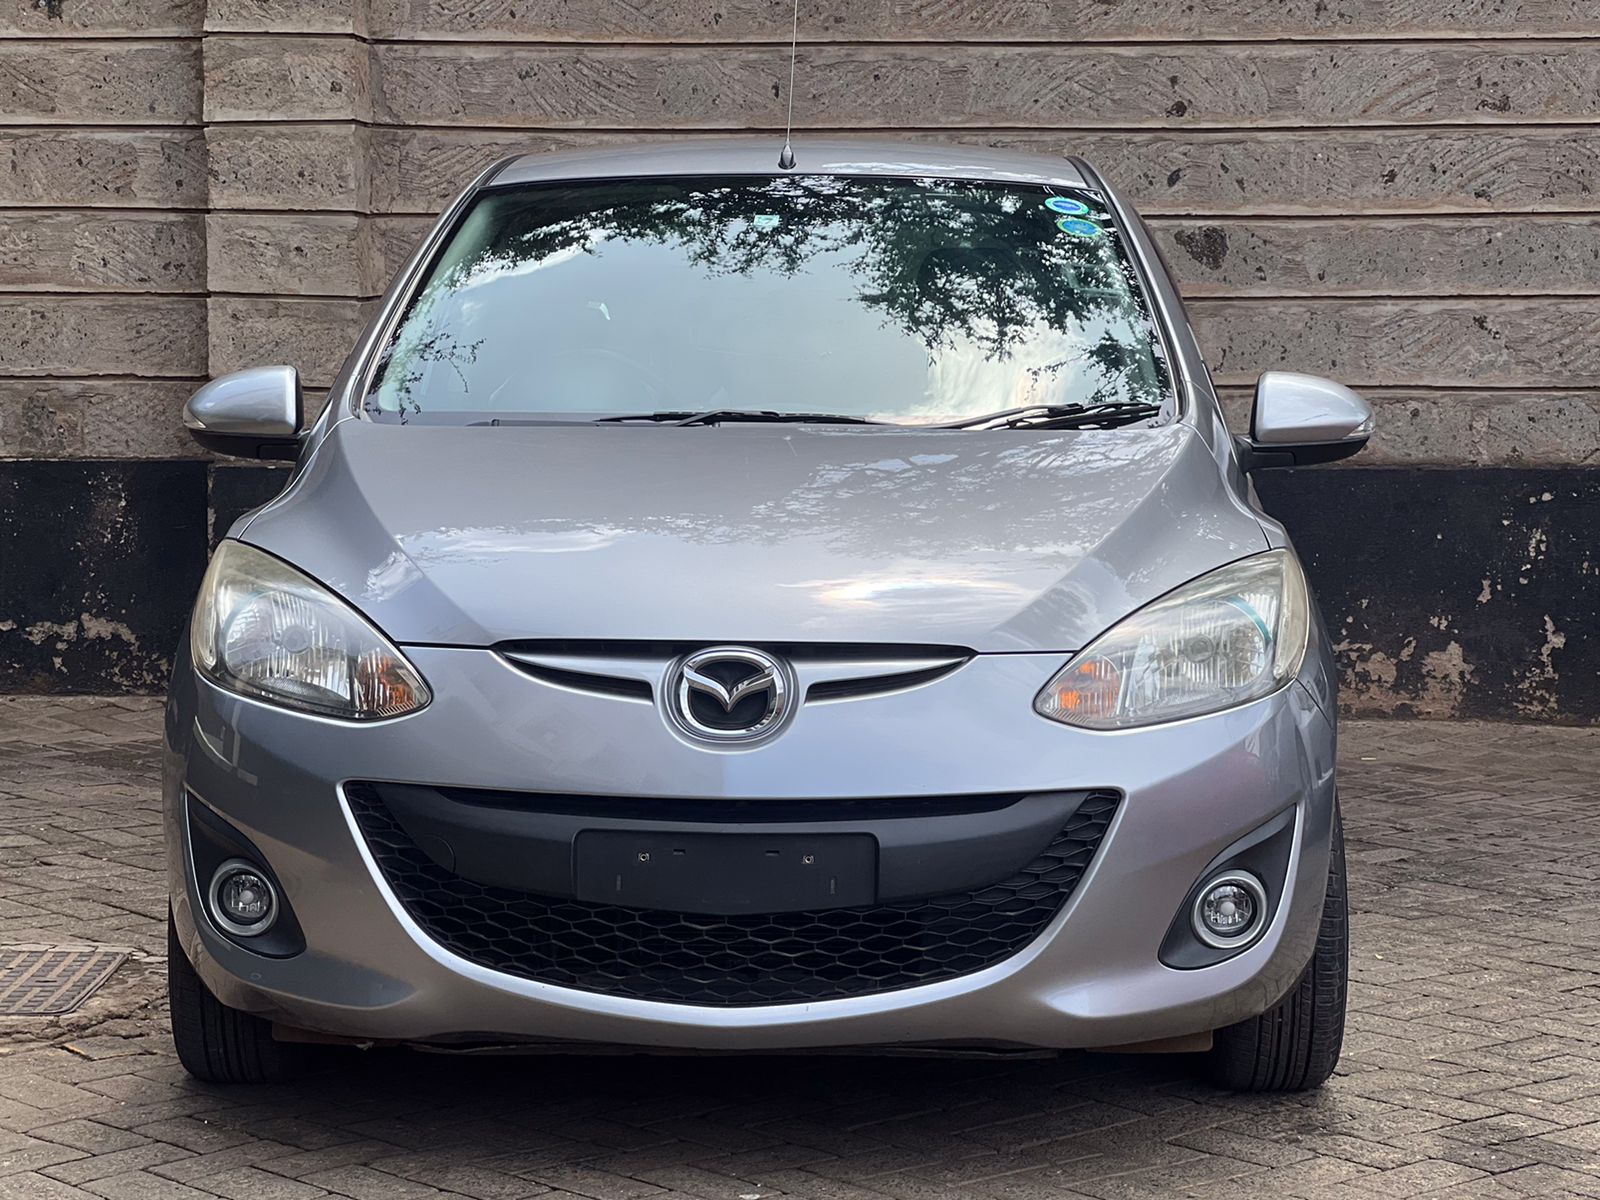 2014 Mazda Demio Price in Kenya